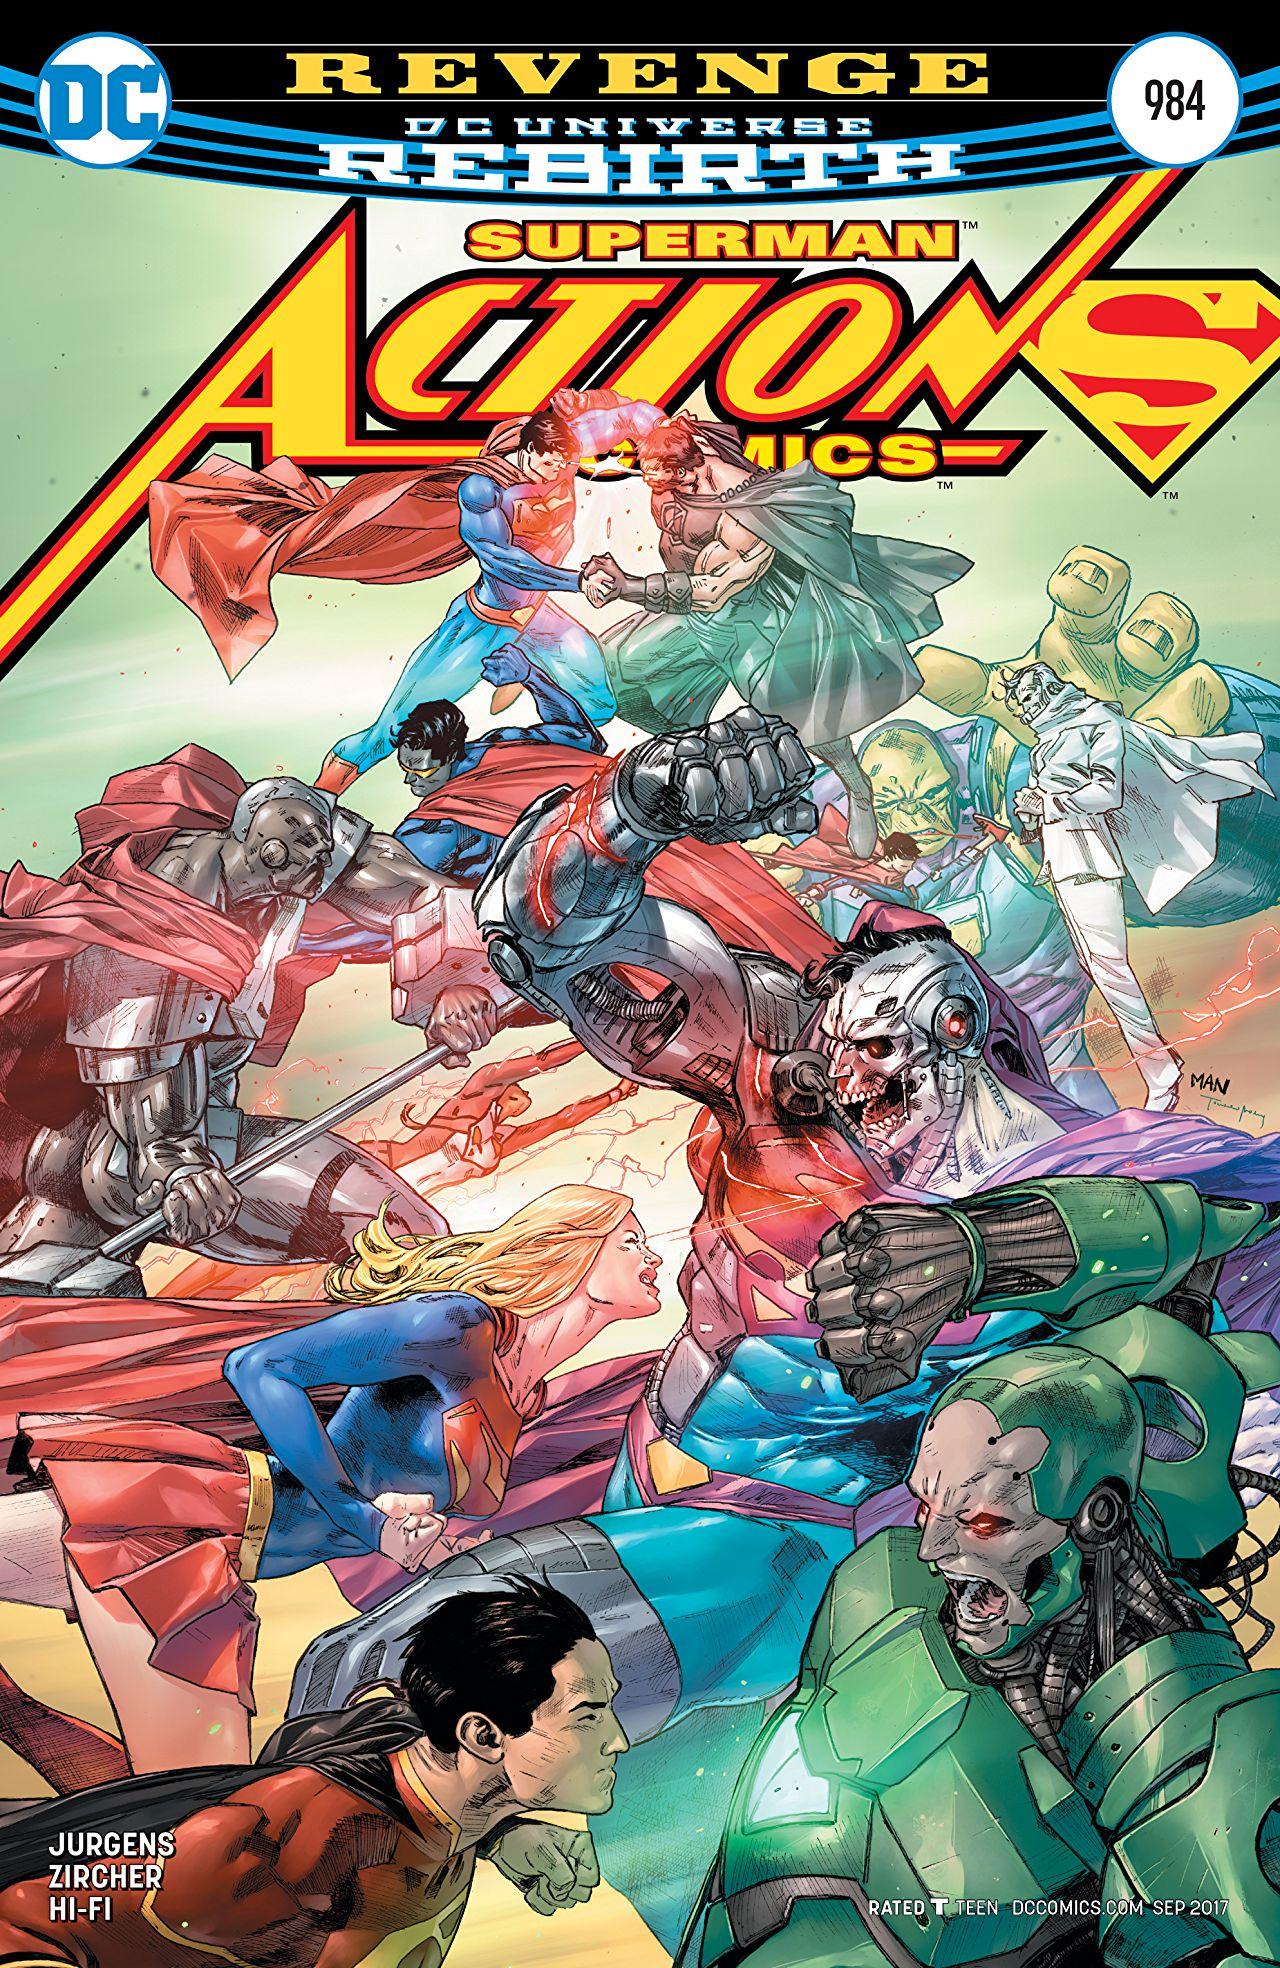 Action Comics Vol. 1 #984